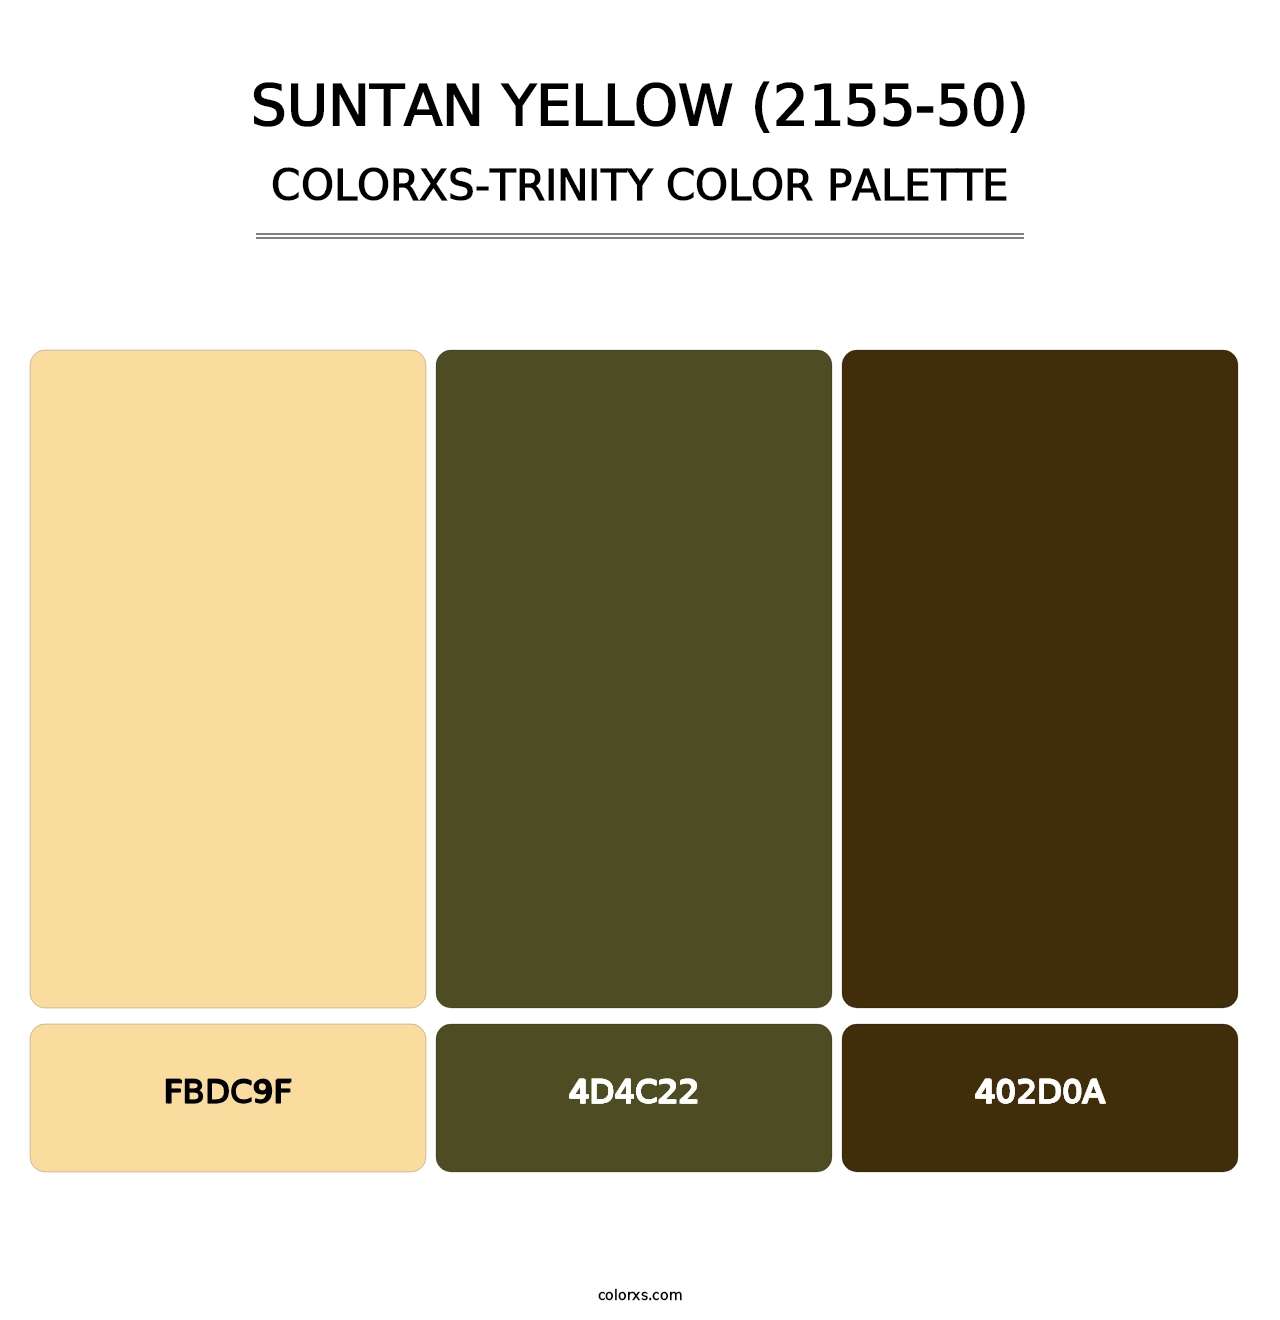 Suntan Yellow (2155-50) - Colorxs Trinity Palette